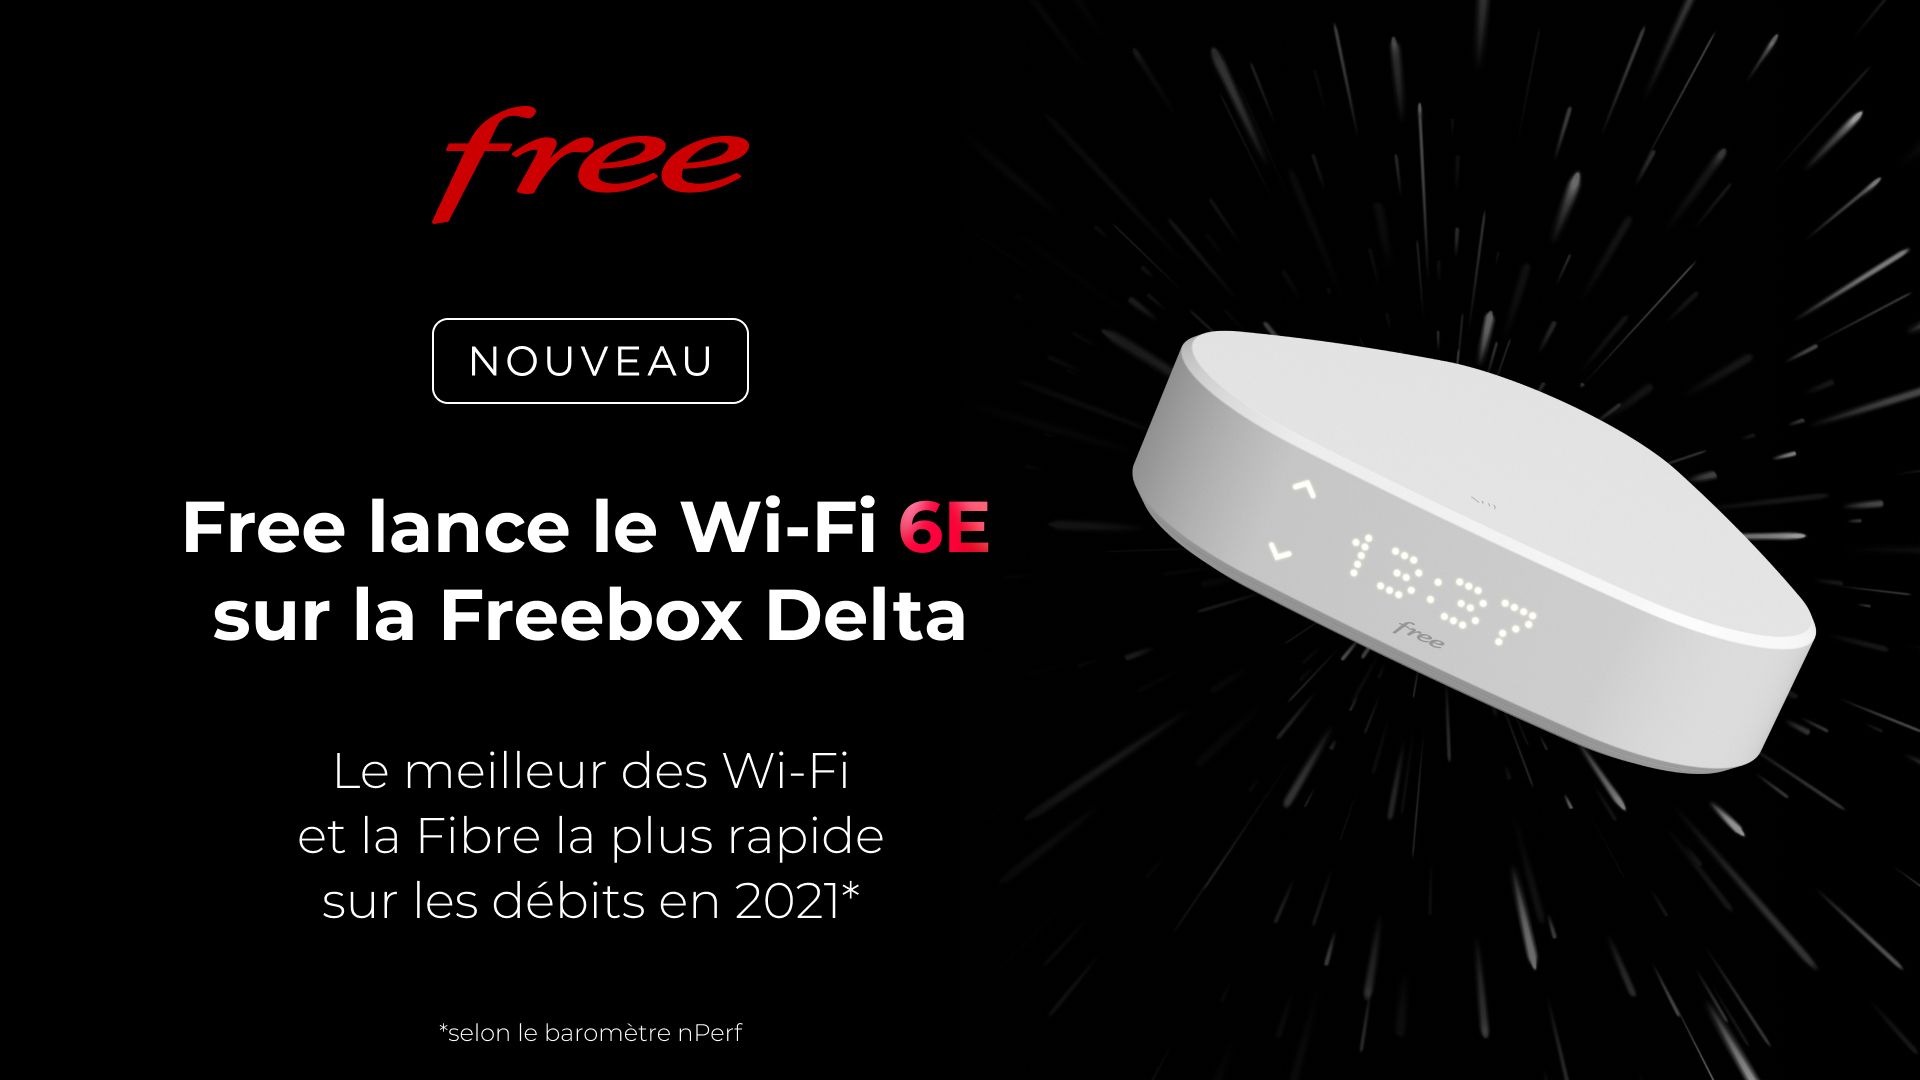 freebox-delta-wifi-6e